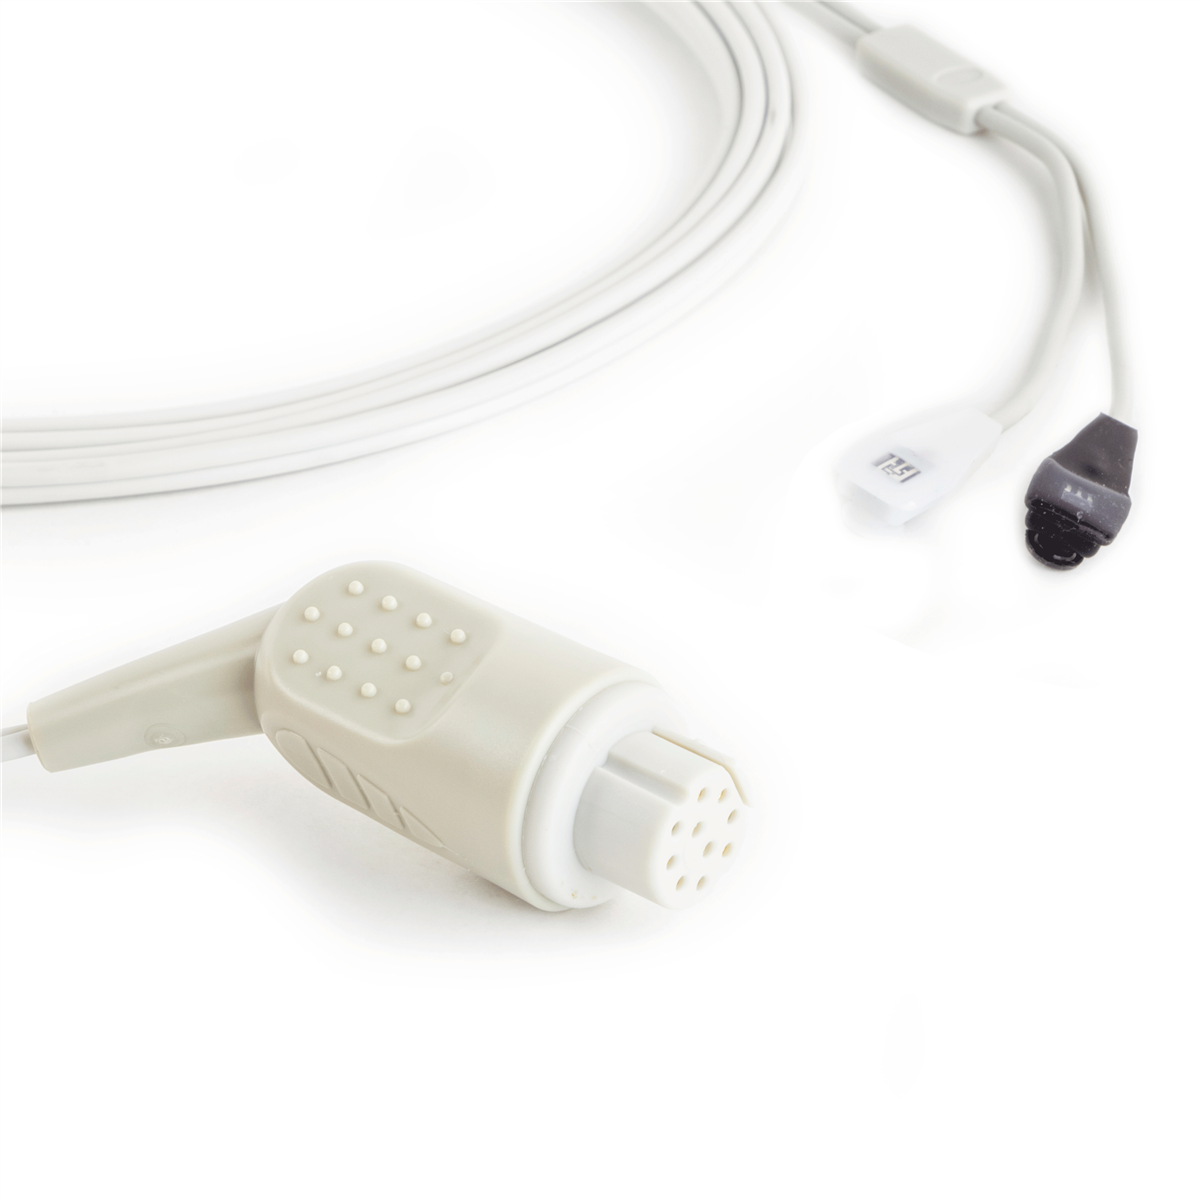 通用电气Datex-Ohmeda多站点Y动脉血氧饱和度传感器10针连接器10英尺/ 3米电缆通用兼容的